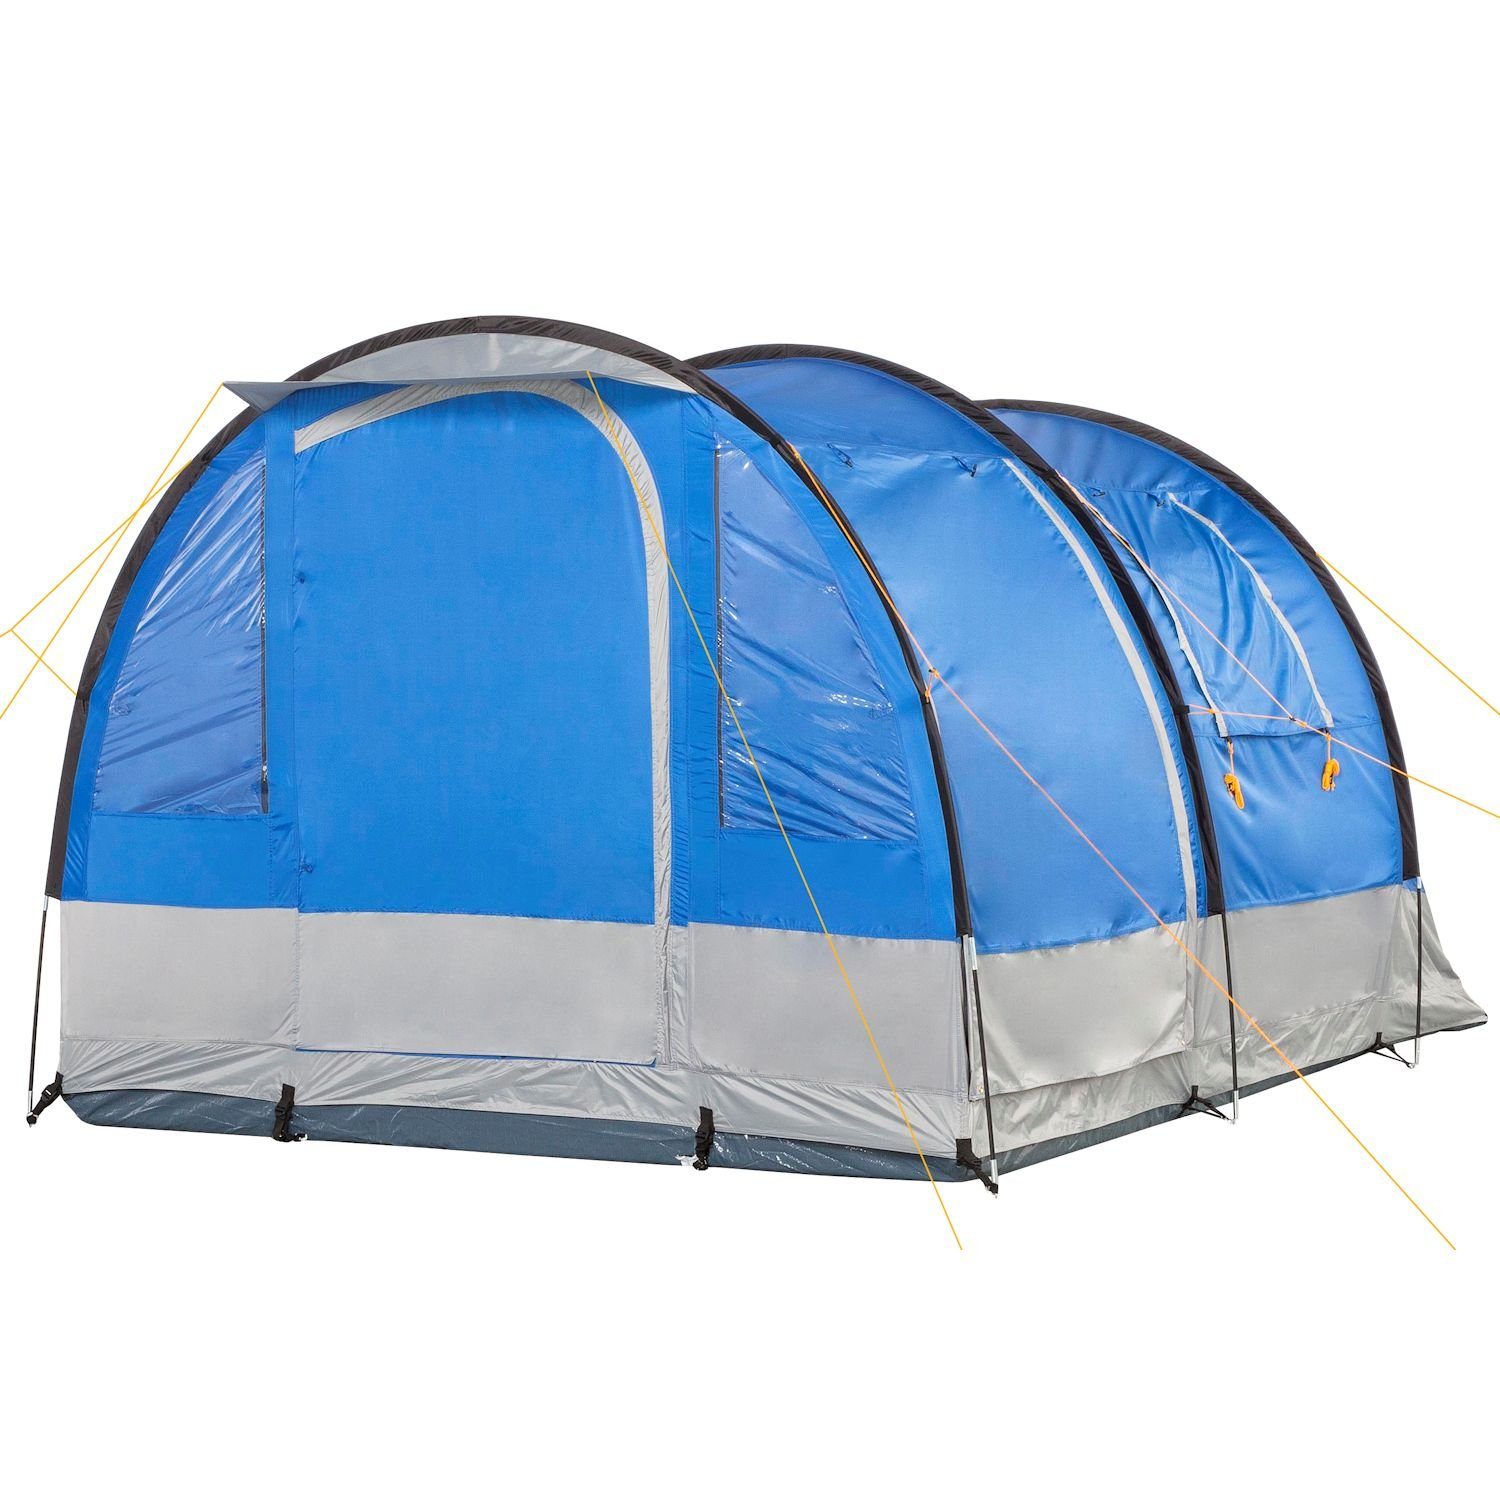 CampFeuer Tunnelzelt »CampFeuer Zelt Smart für 4 Personen, Blau/Grau, Tunnelzelt  2000 mm Wassersäule« online kaufen | OTTO